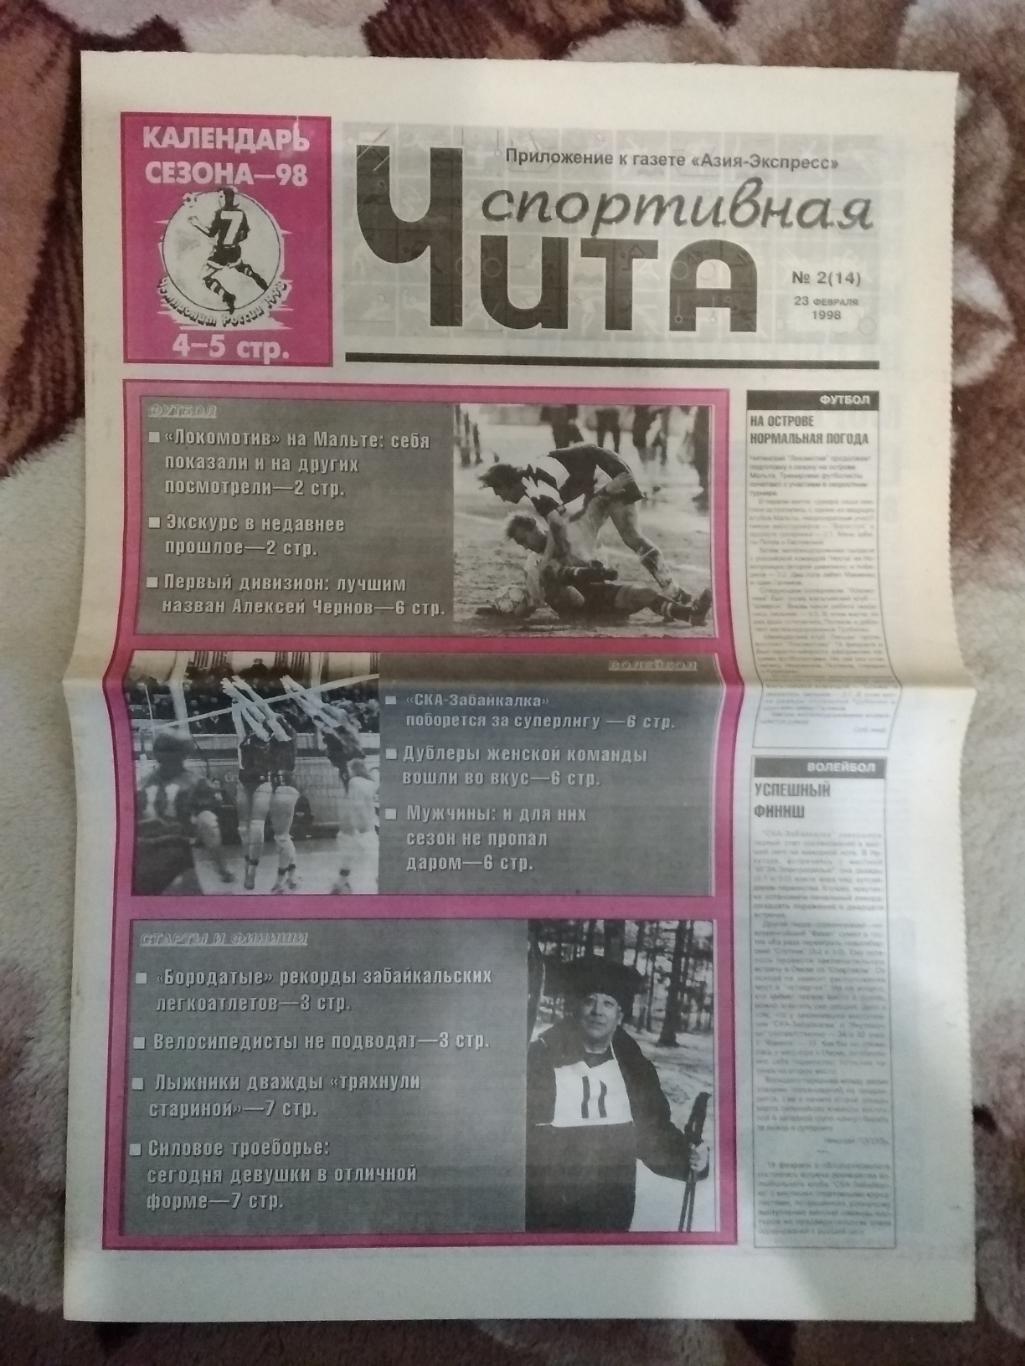 Газета.Чита спортивная № 2 1998 г.